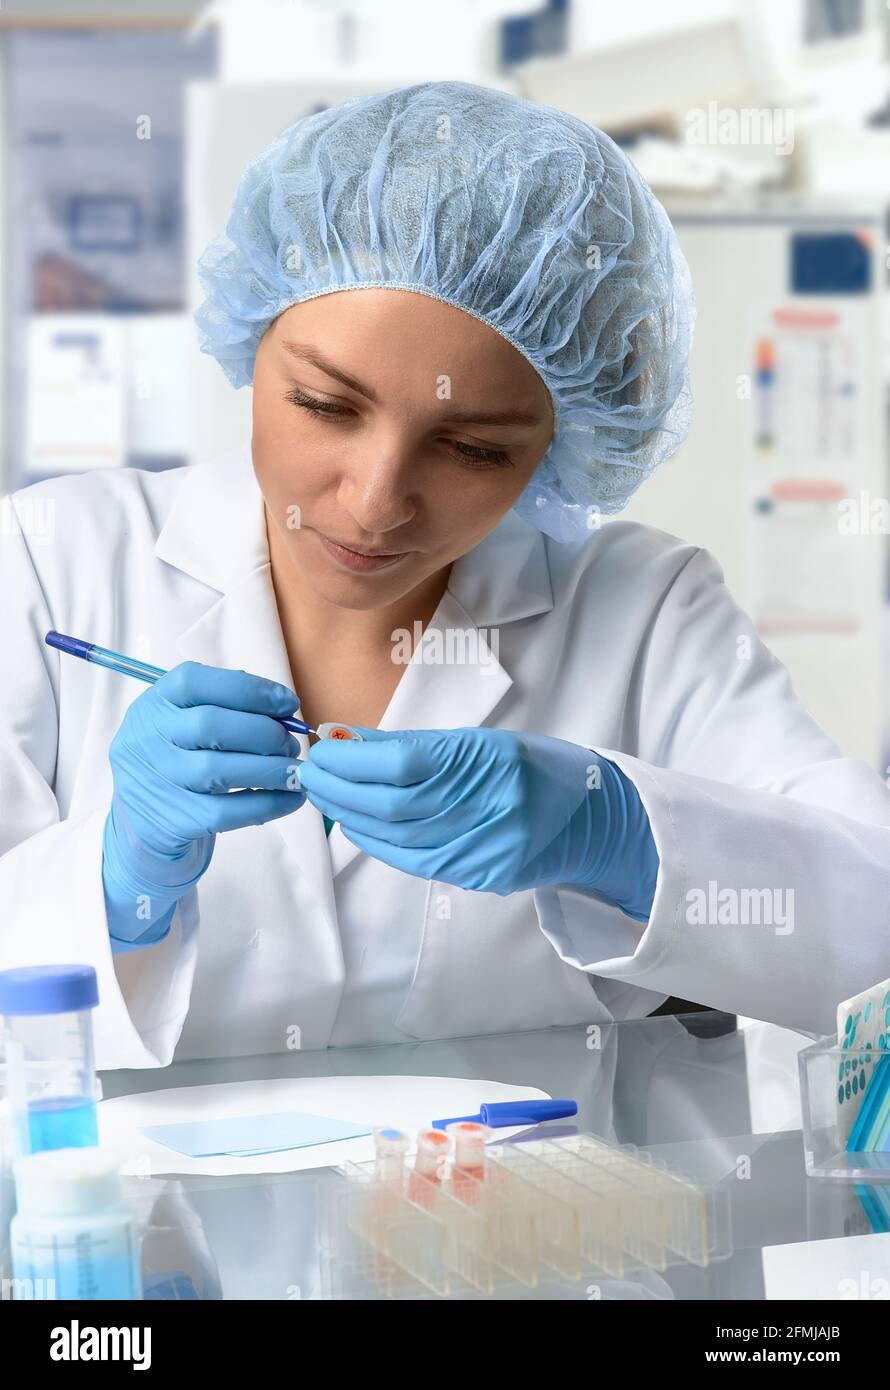 Pharma femme TECH travaille en laboratoire. Jeune femme caucasienne dans des gants de protection, un chapeau et une blouse blanche échantillon de pipettes dans un flacon. Intérieur du laboratoire Banque D'Images